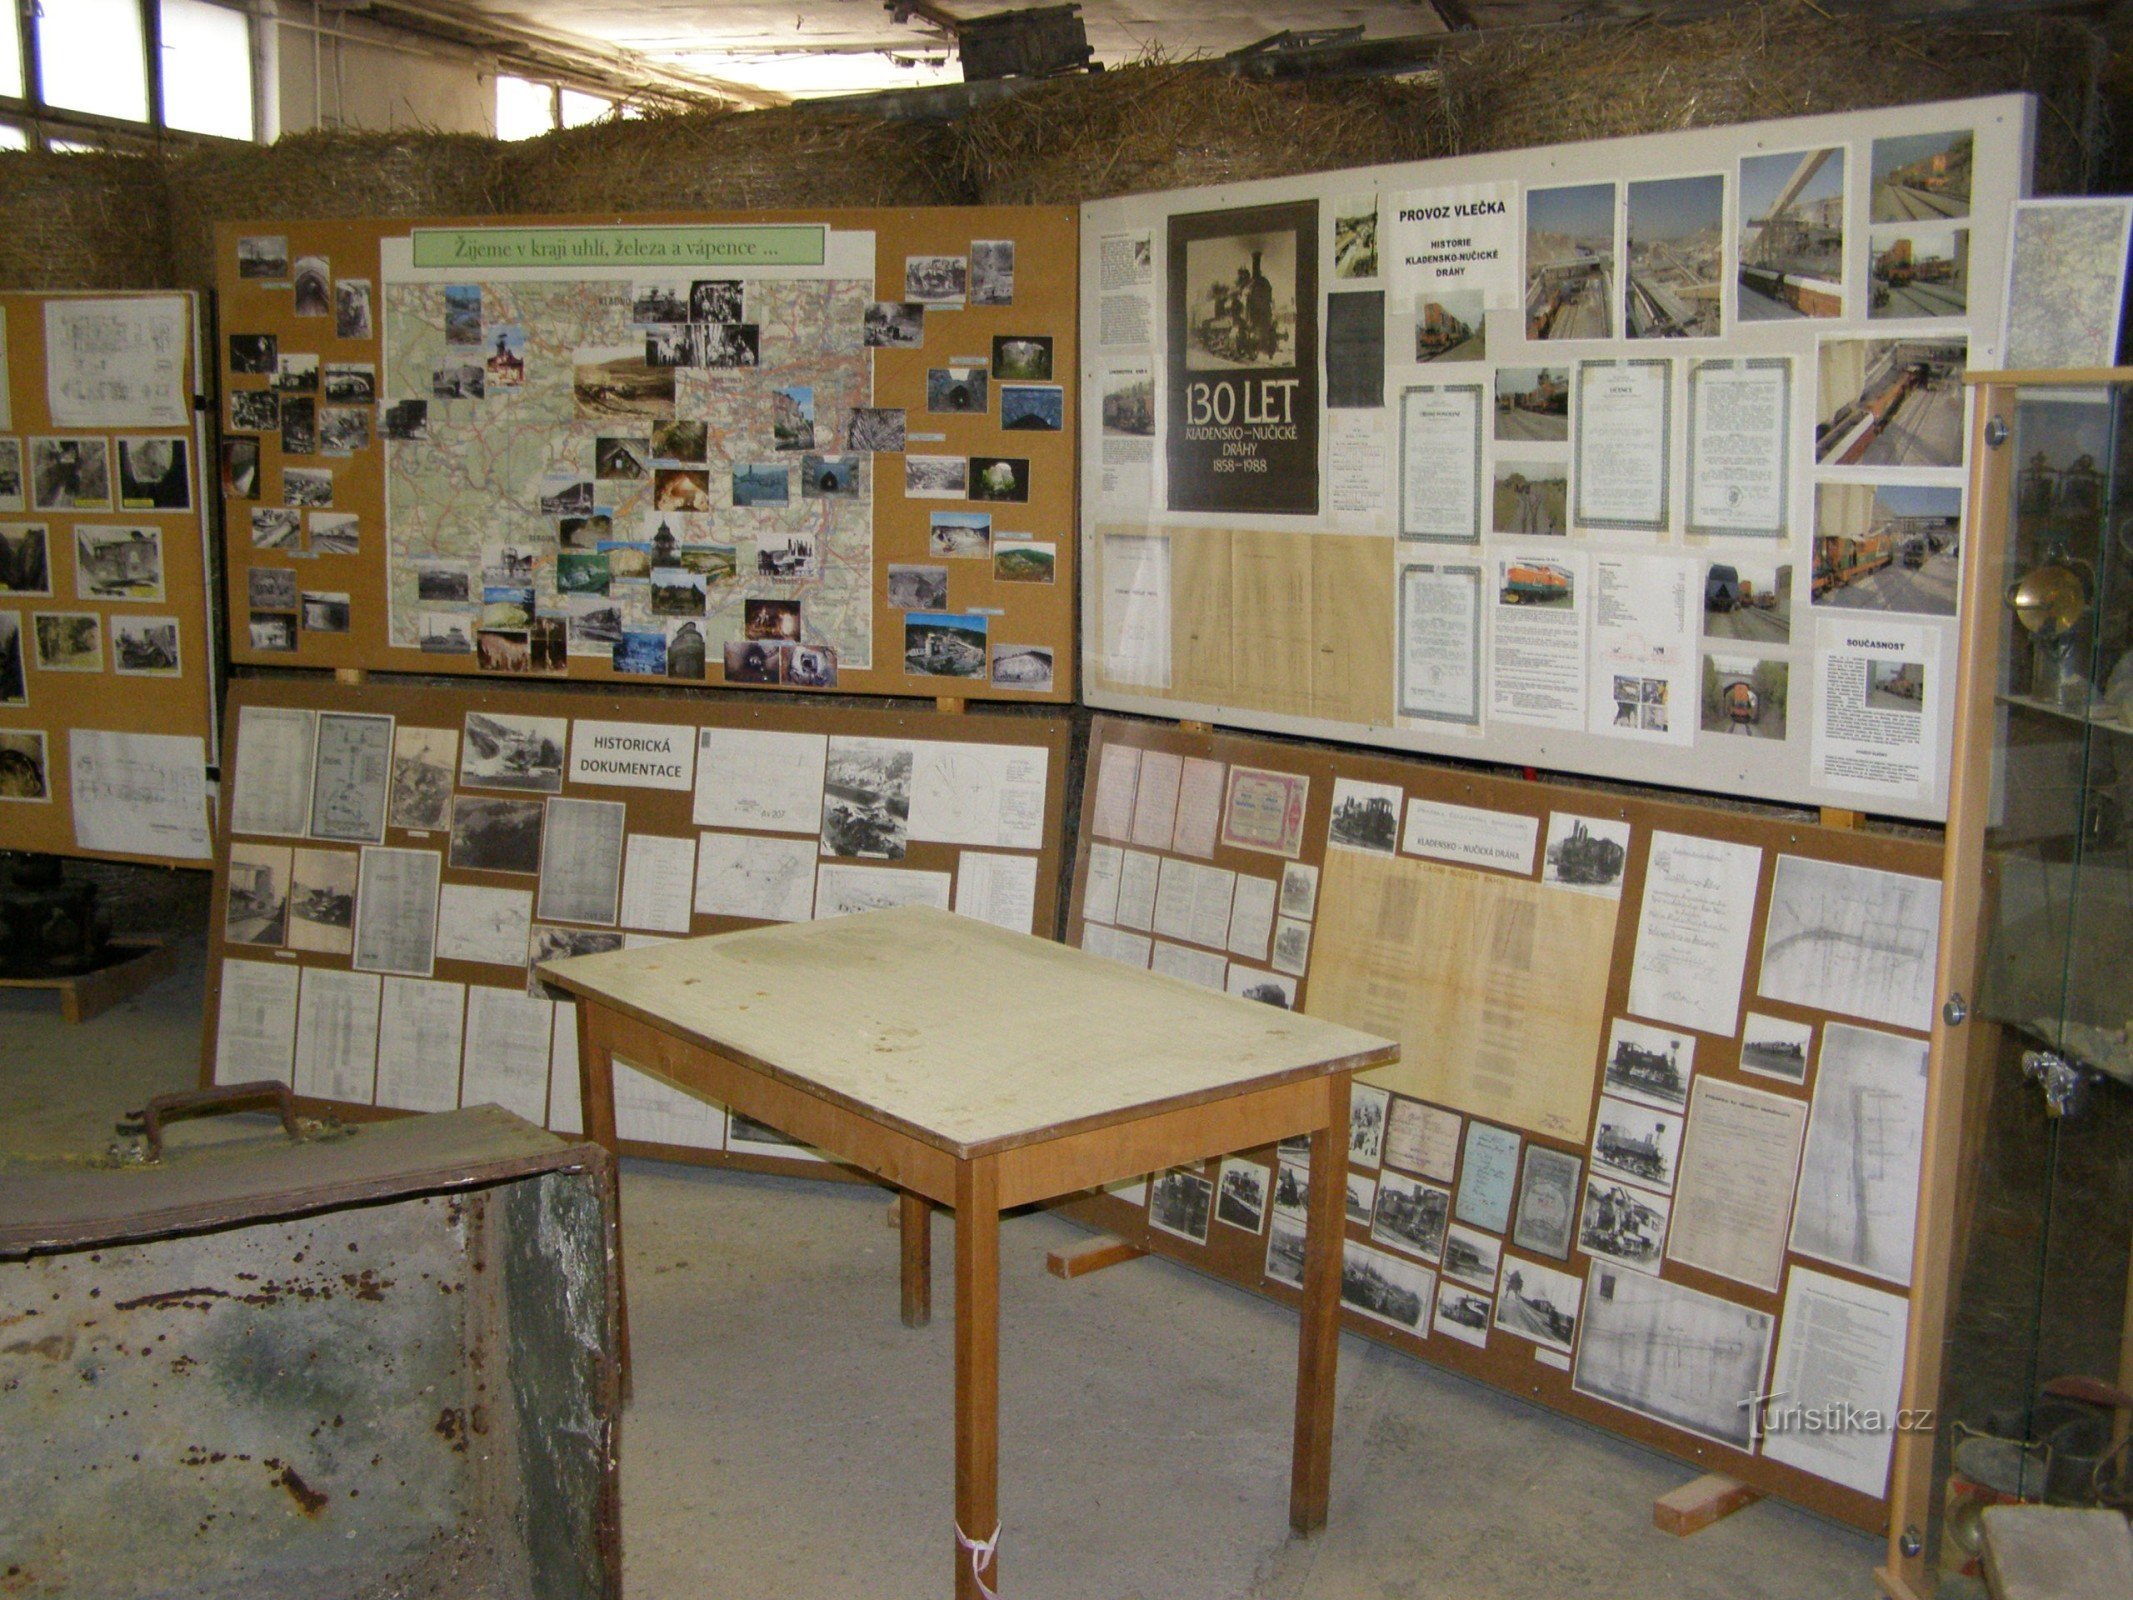 painéis de informação no salão da fábrica